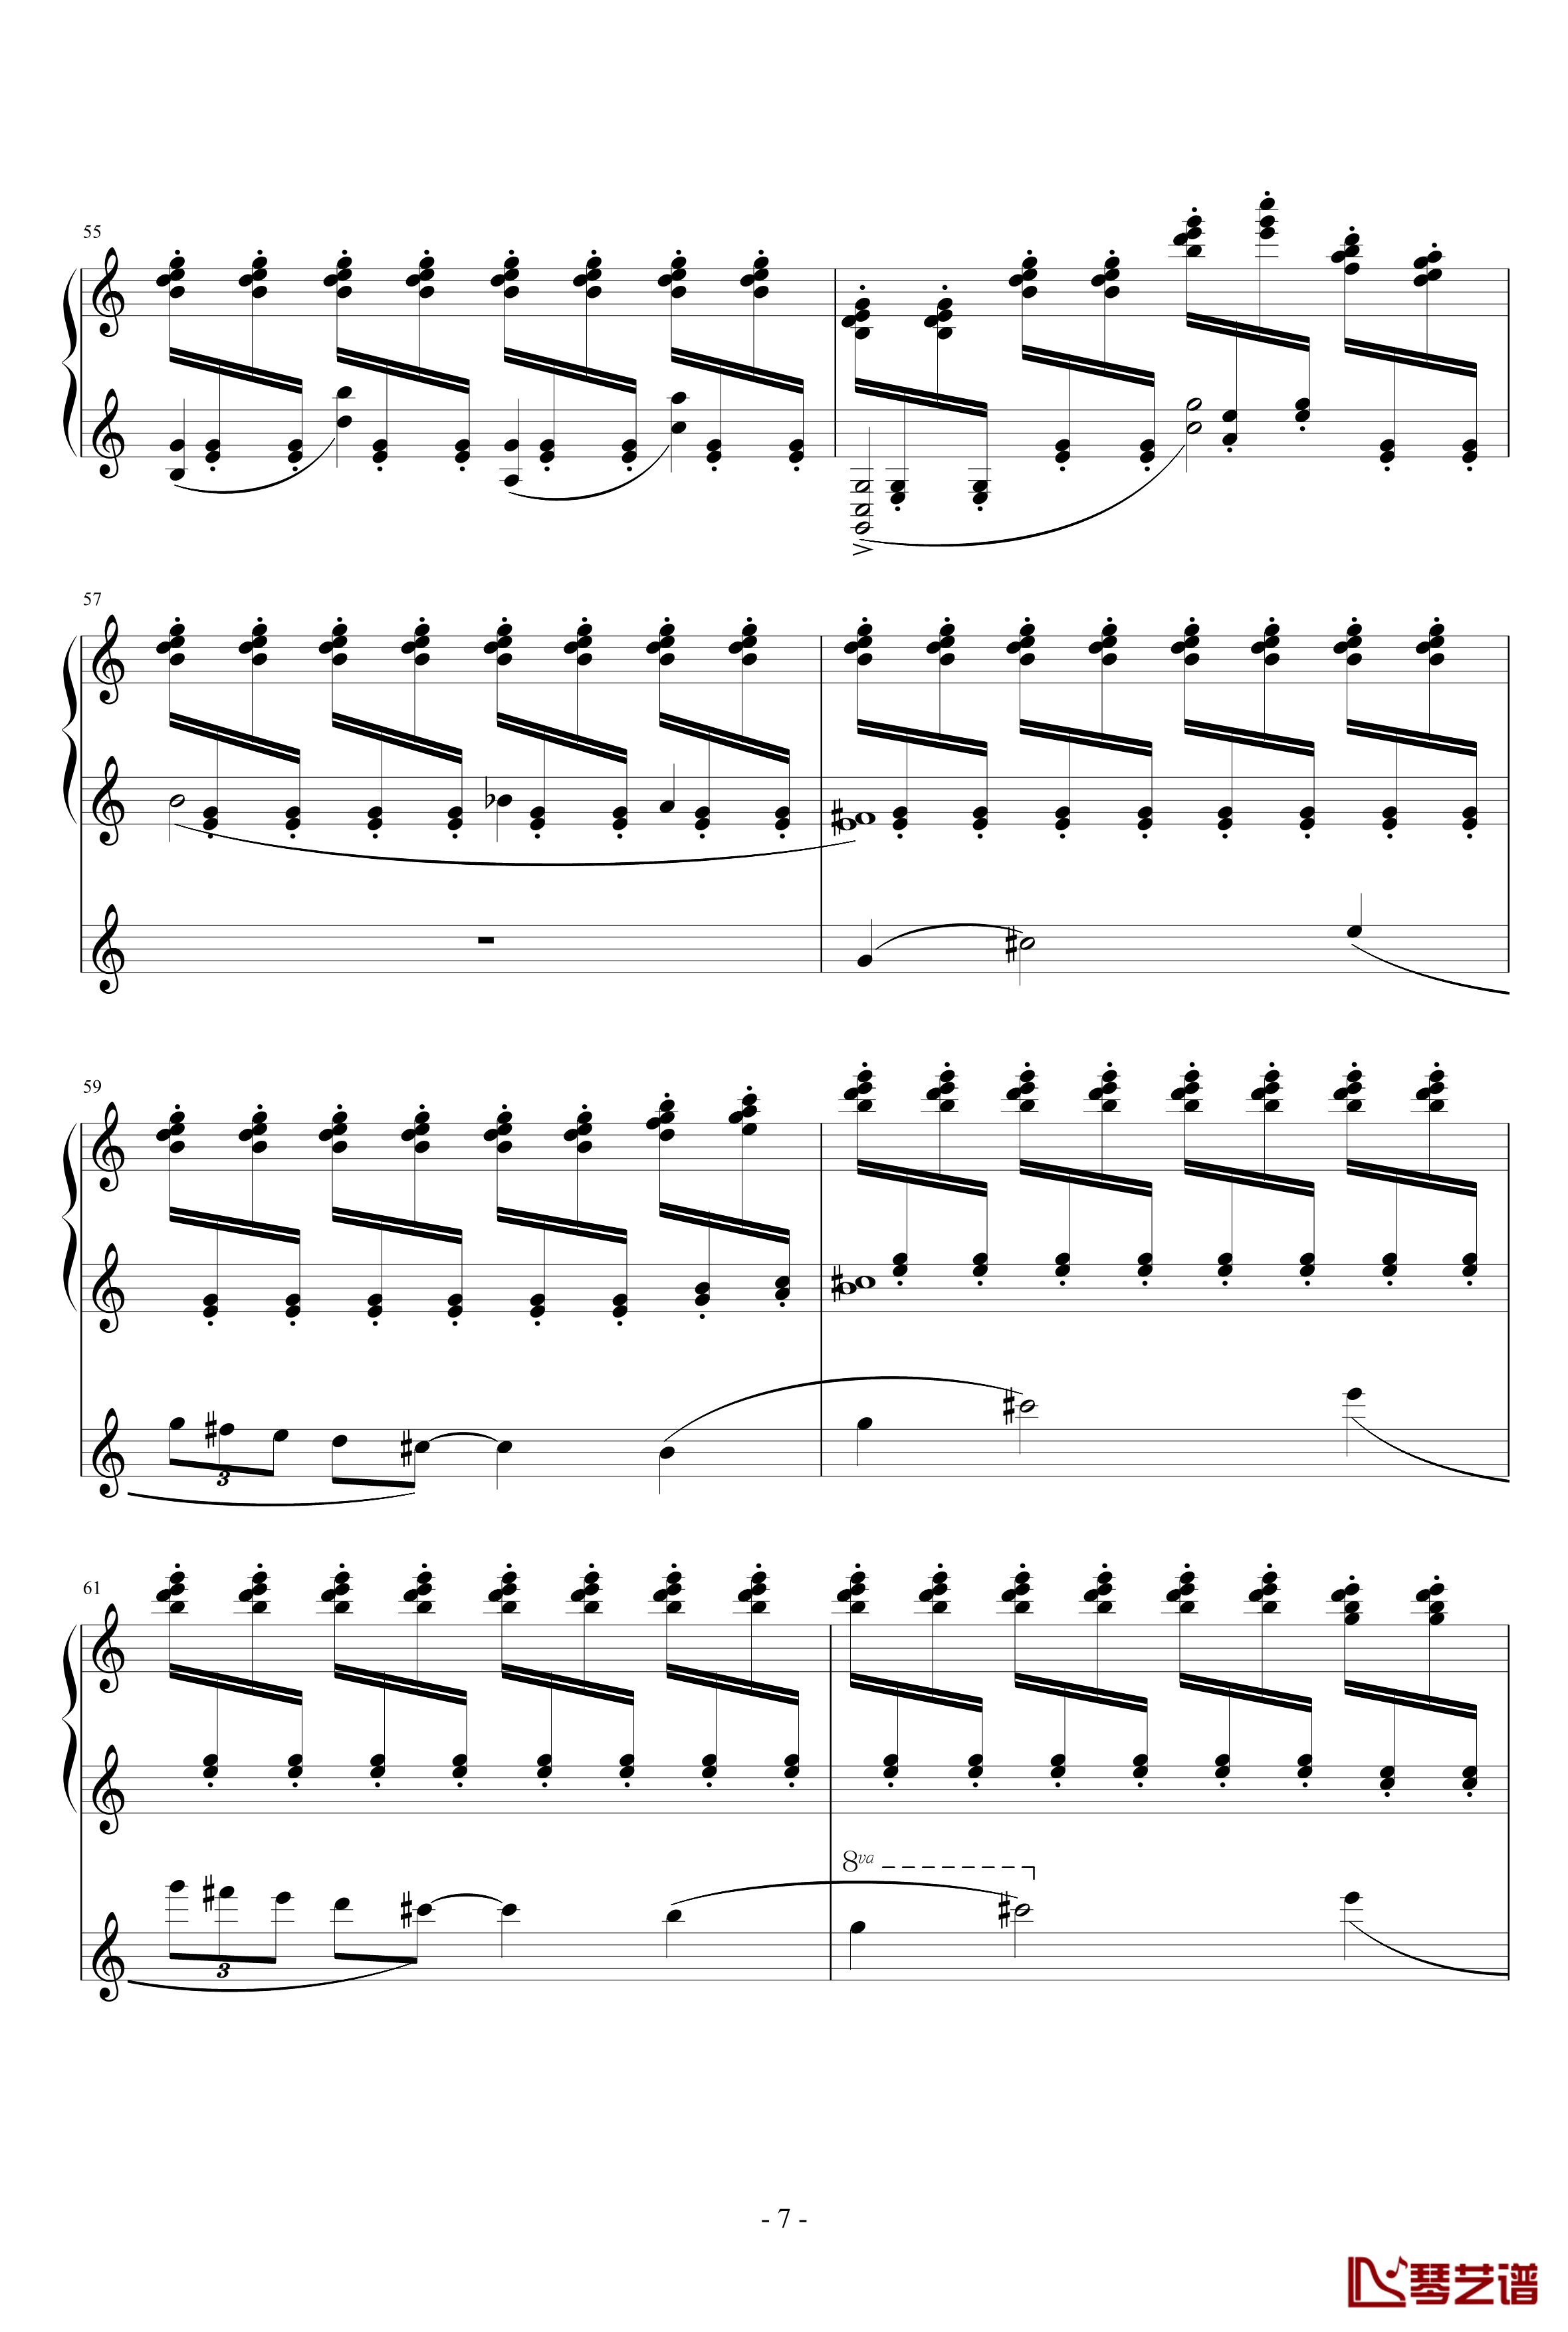 冥想集钢琴谱-无穷动-升c小调7